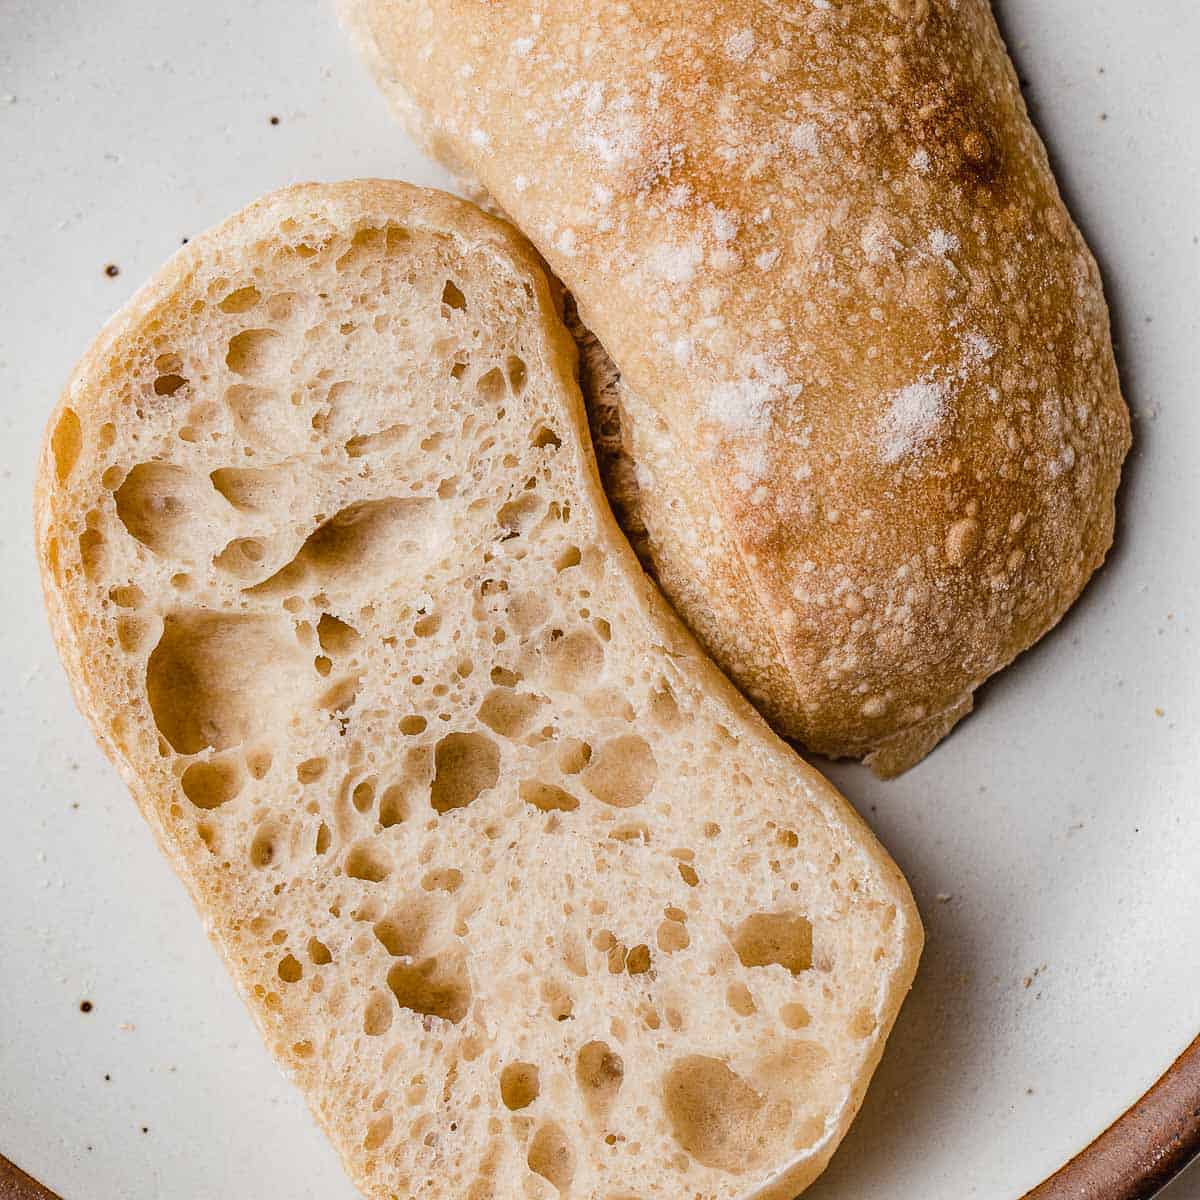 Sourdough ciabatta bread sliced in half on a plate.